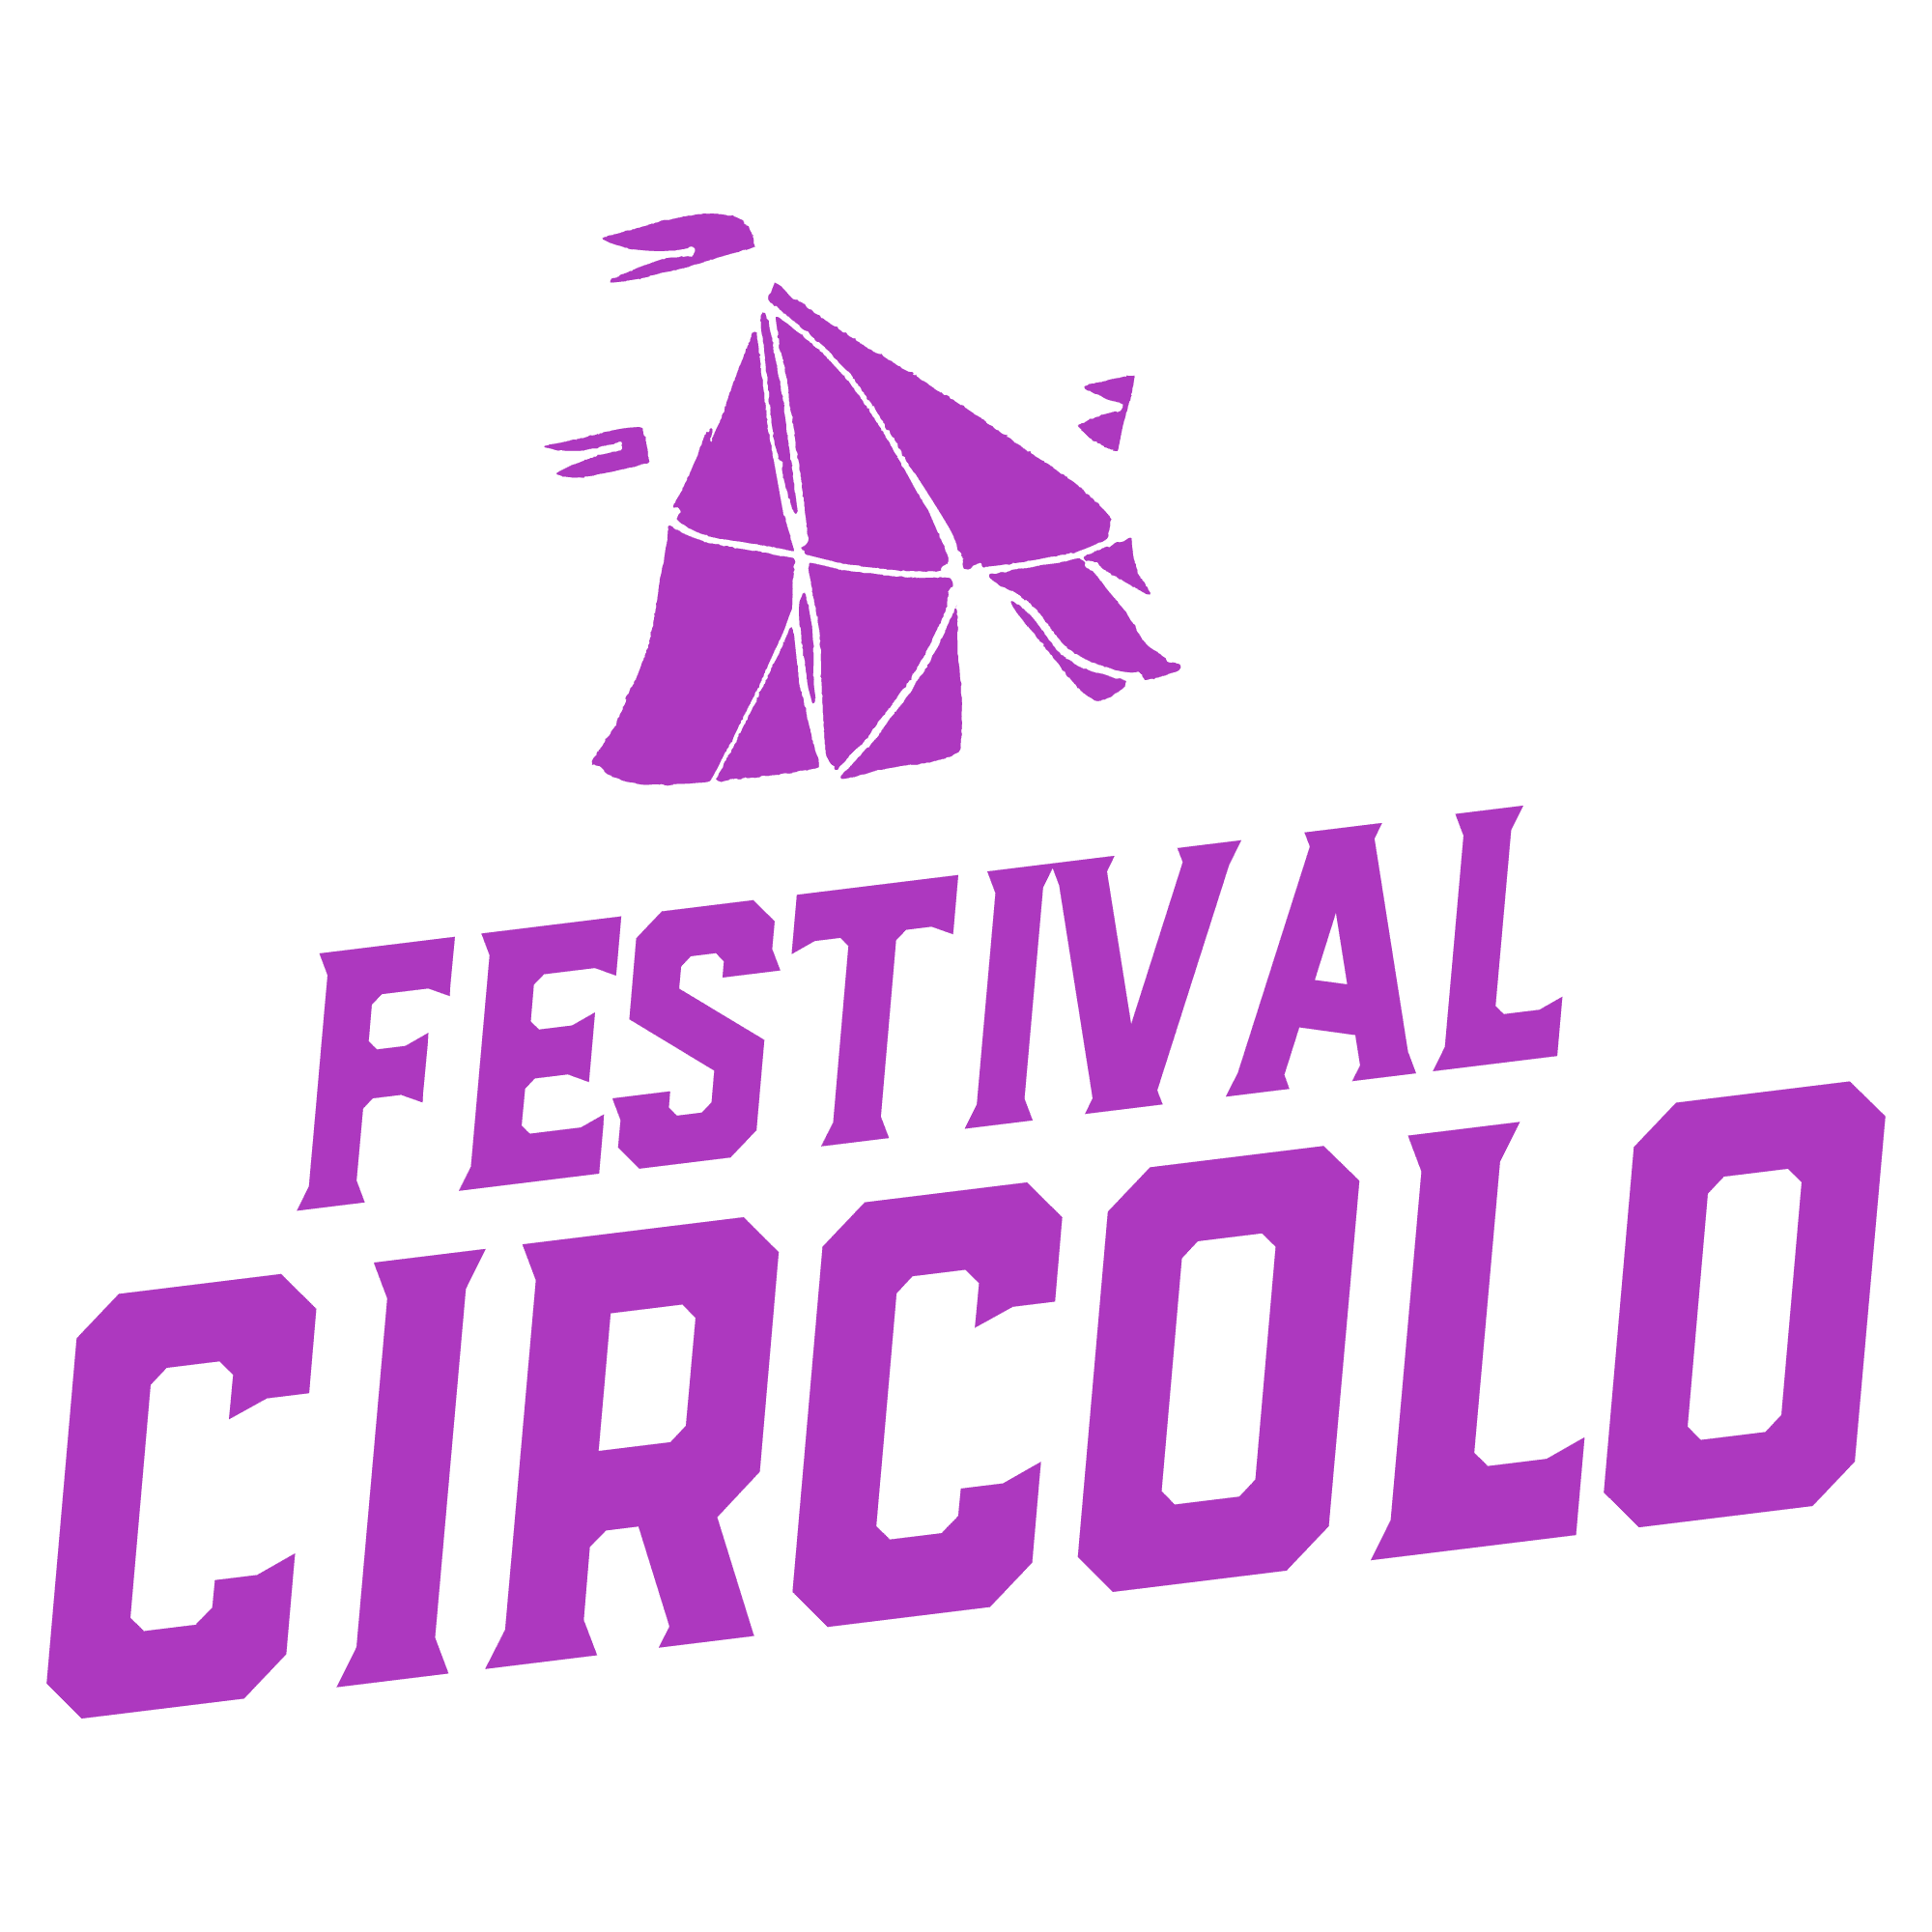 Festival Circolo circusnext - European Circus Label